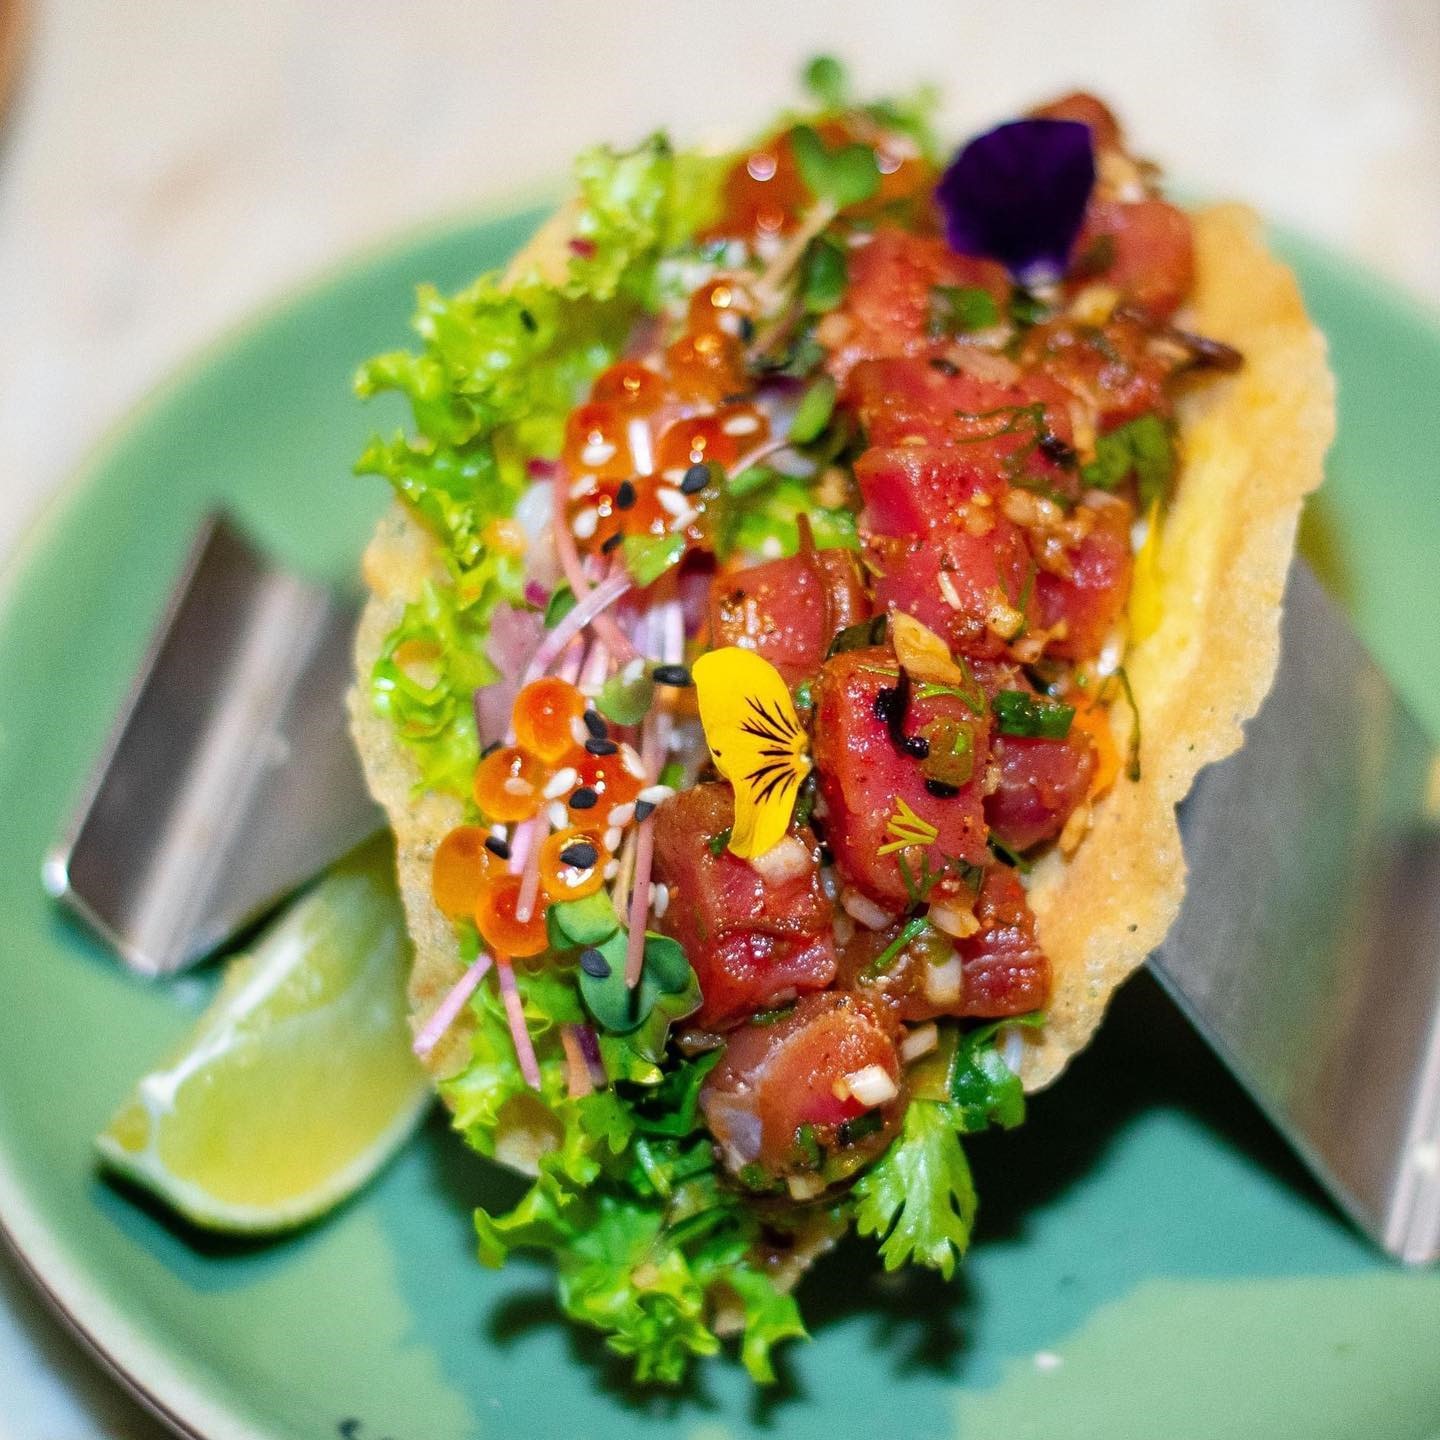 Bánh xèo trình bày như một chiếc tacos truyền thống của ẩm thực Mexico.